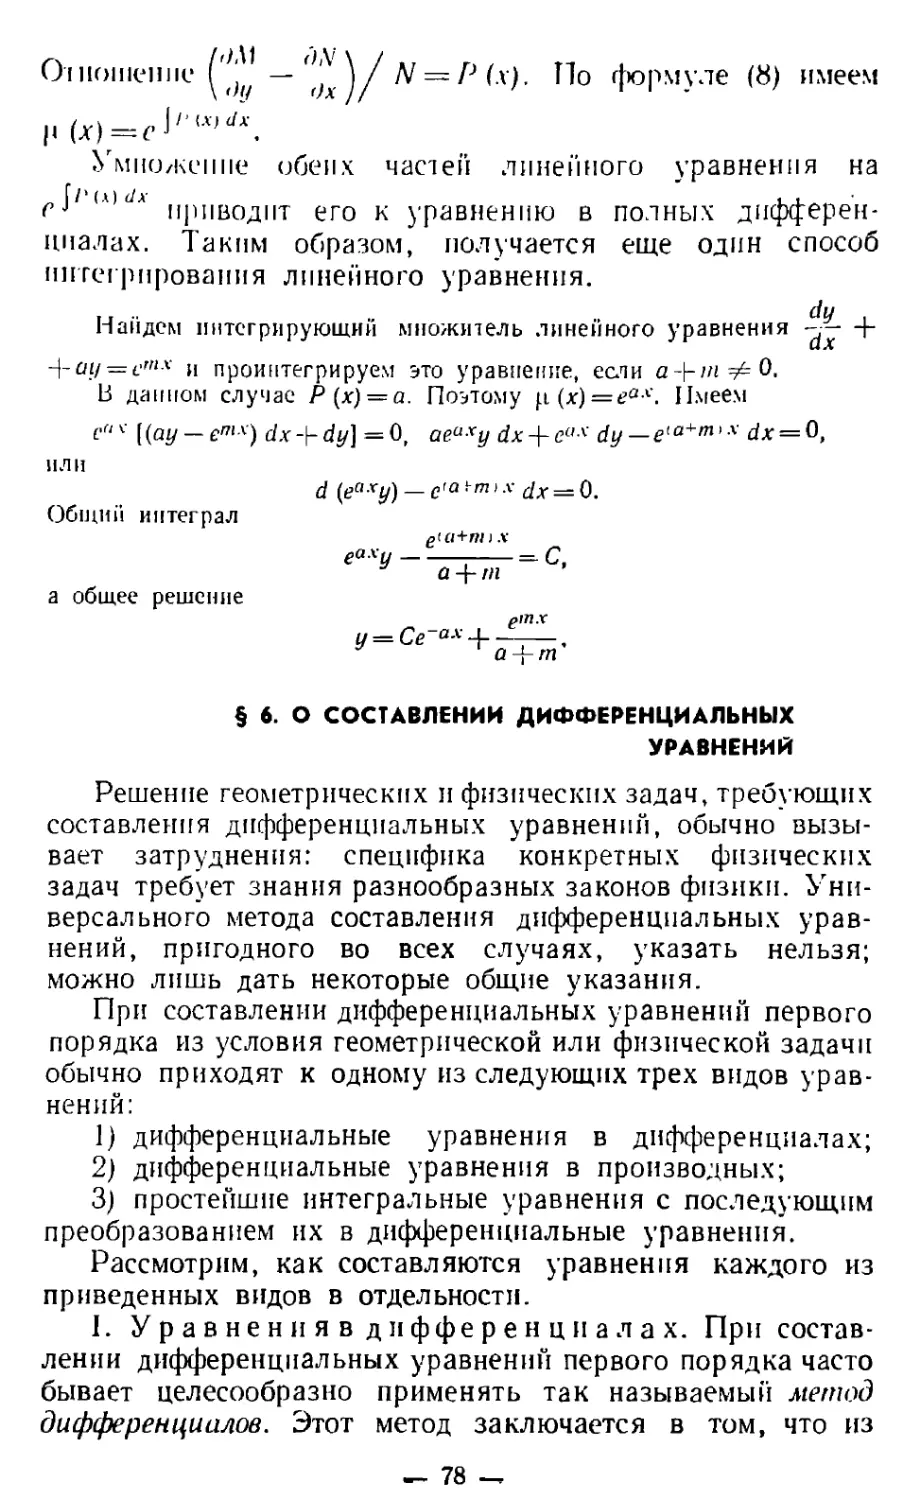 § 6. О составлении дифференциальных уравнений